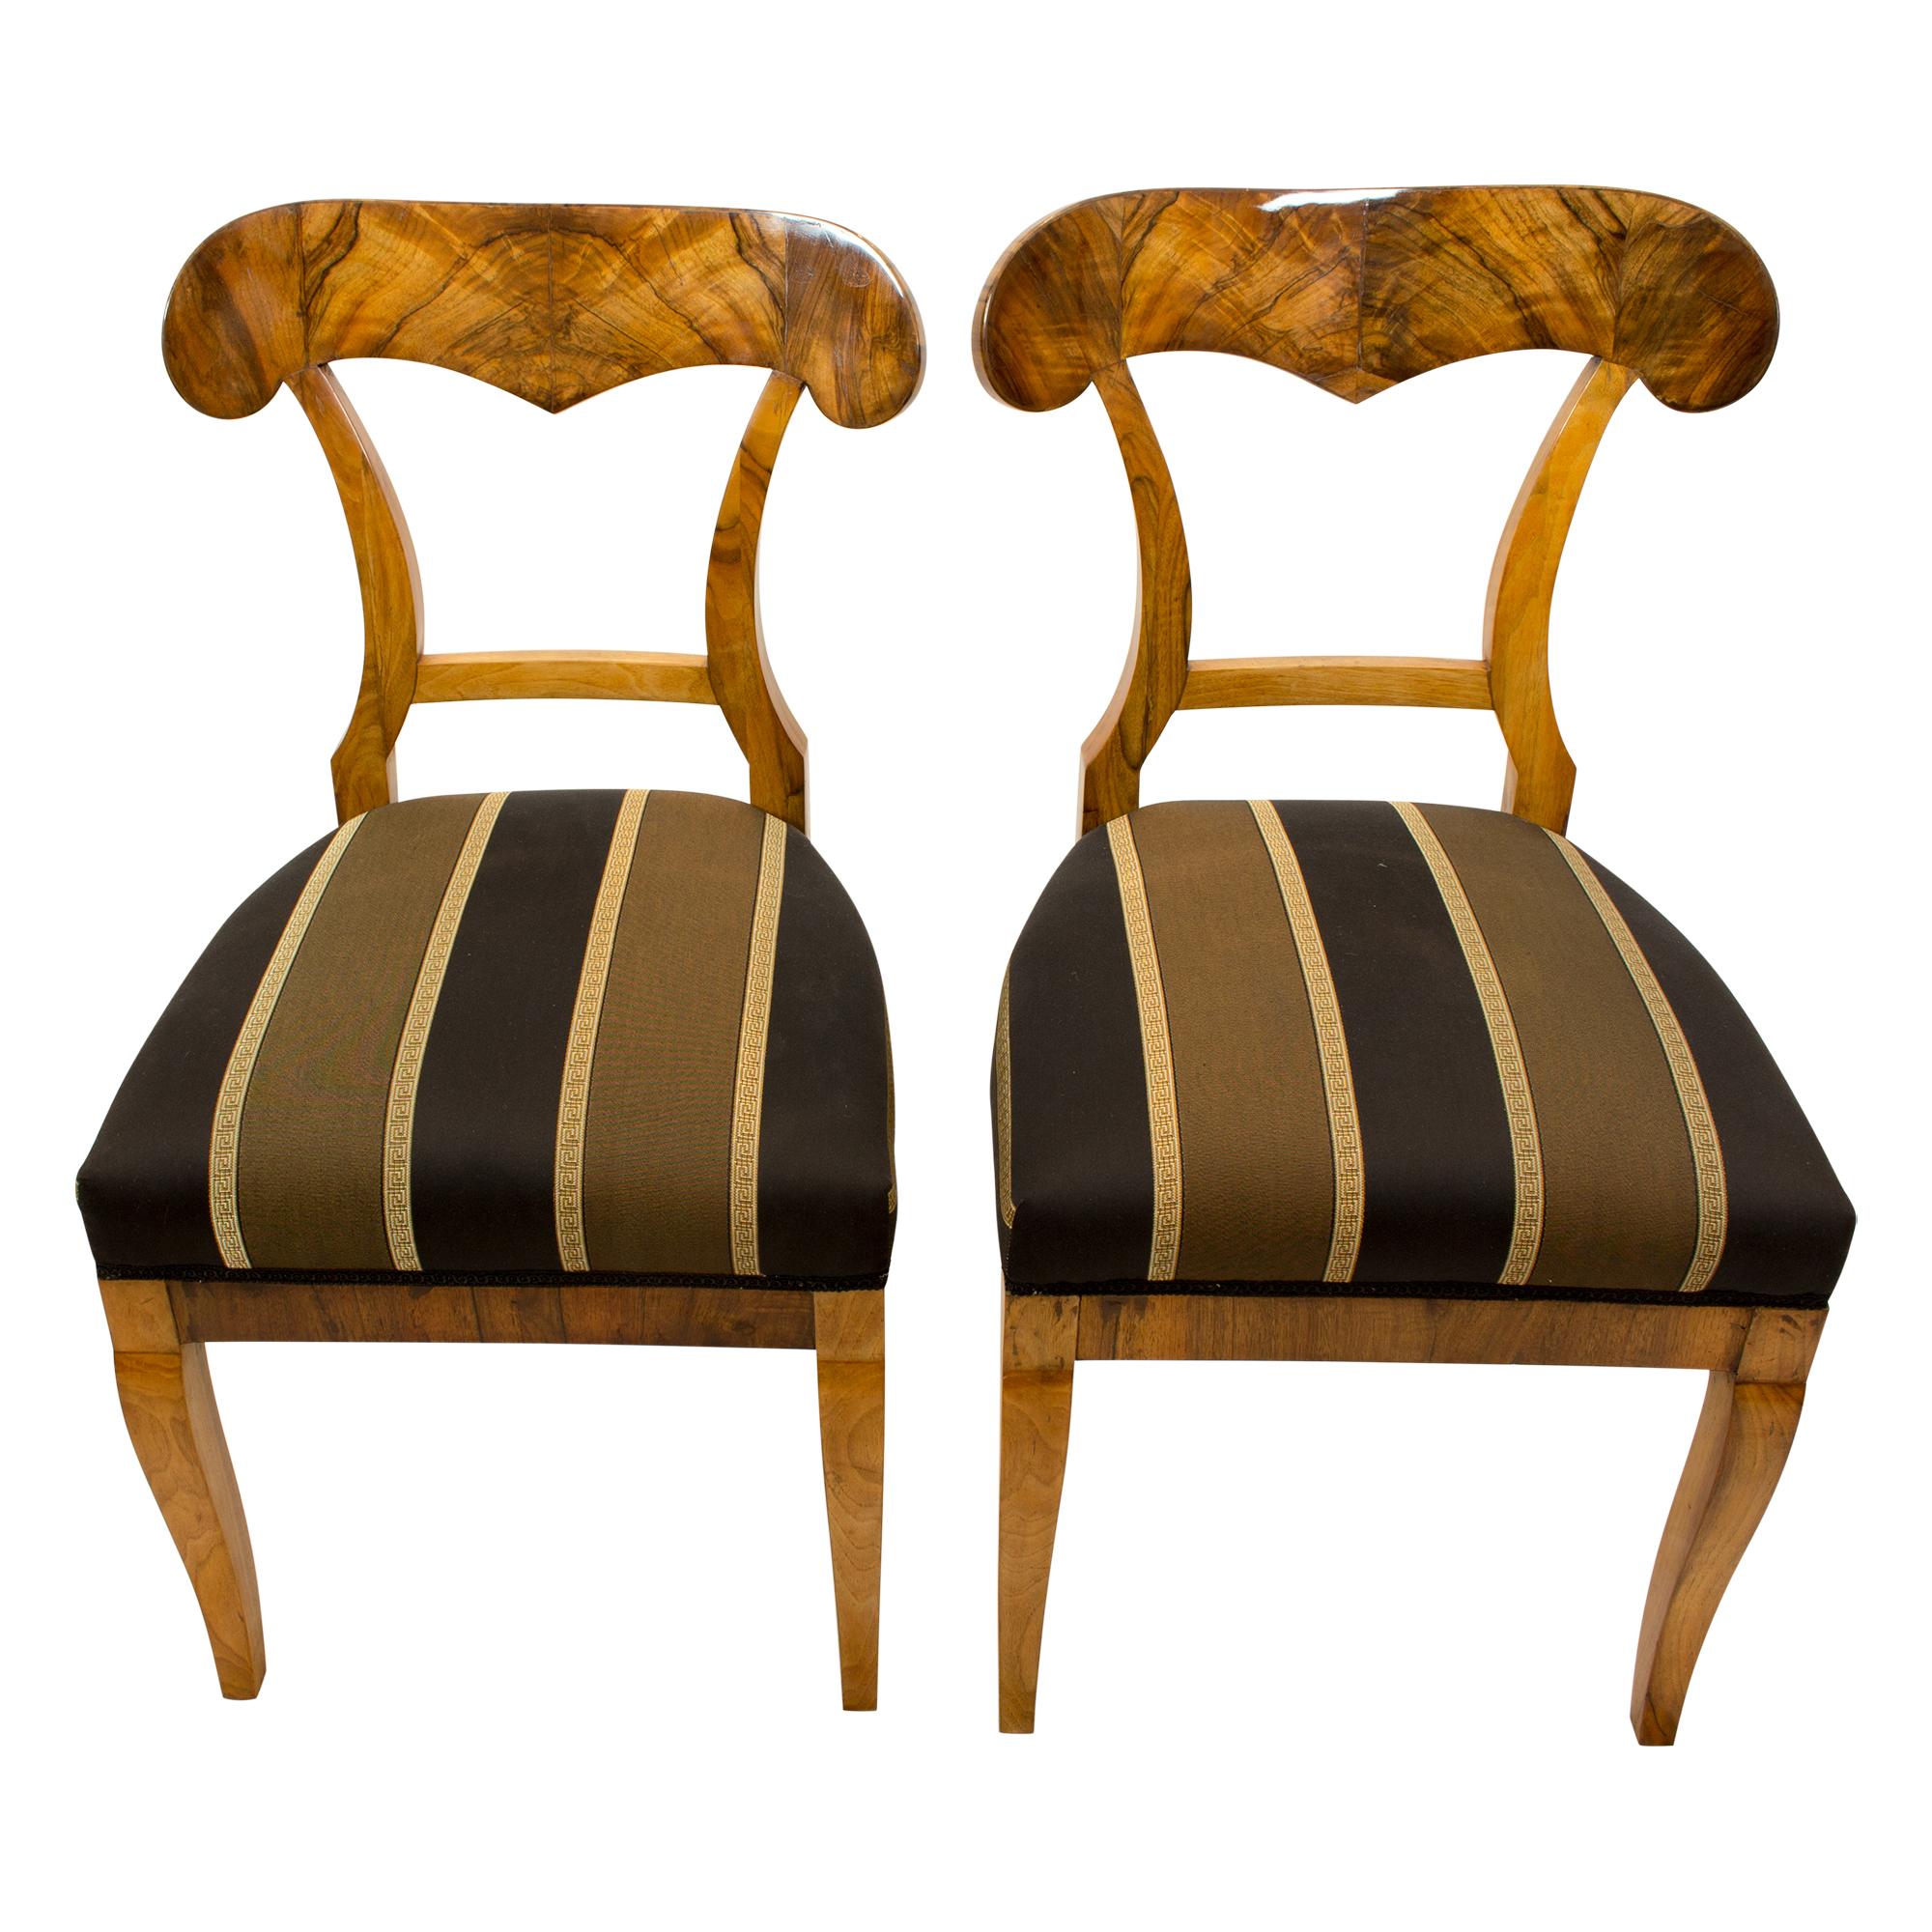 Schönes Paar Biedermeier Schaufelstühle, hergestellt um 1825 mit dickem Nussbaum und Nussbaumfurnier auf Fichtenholz. Der Stuhl wurde im traditionellen Stil mit Riemen und Federn neu gepolstert und mit neuem Stoff bezogen. In sehr gutem